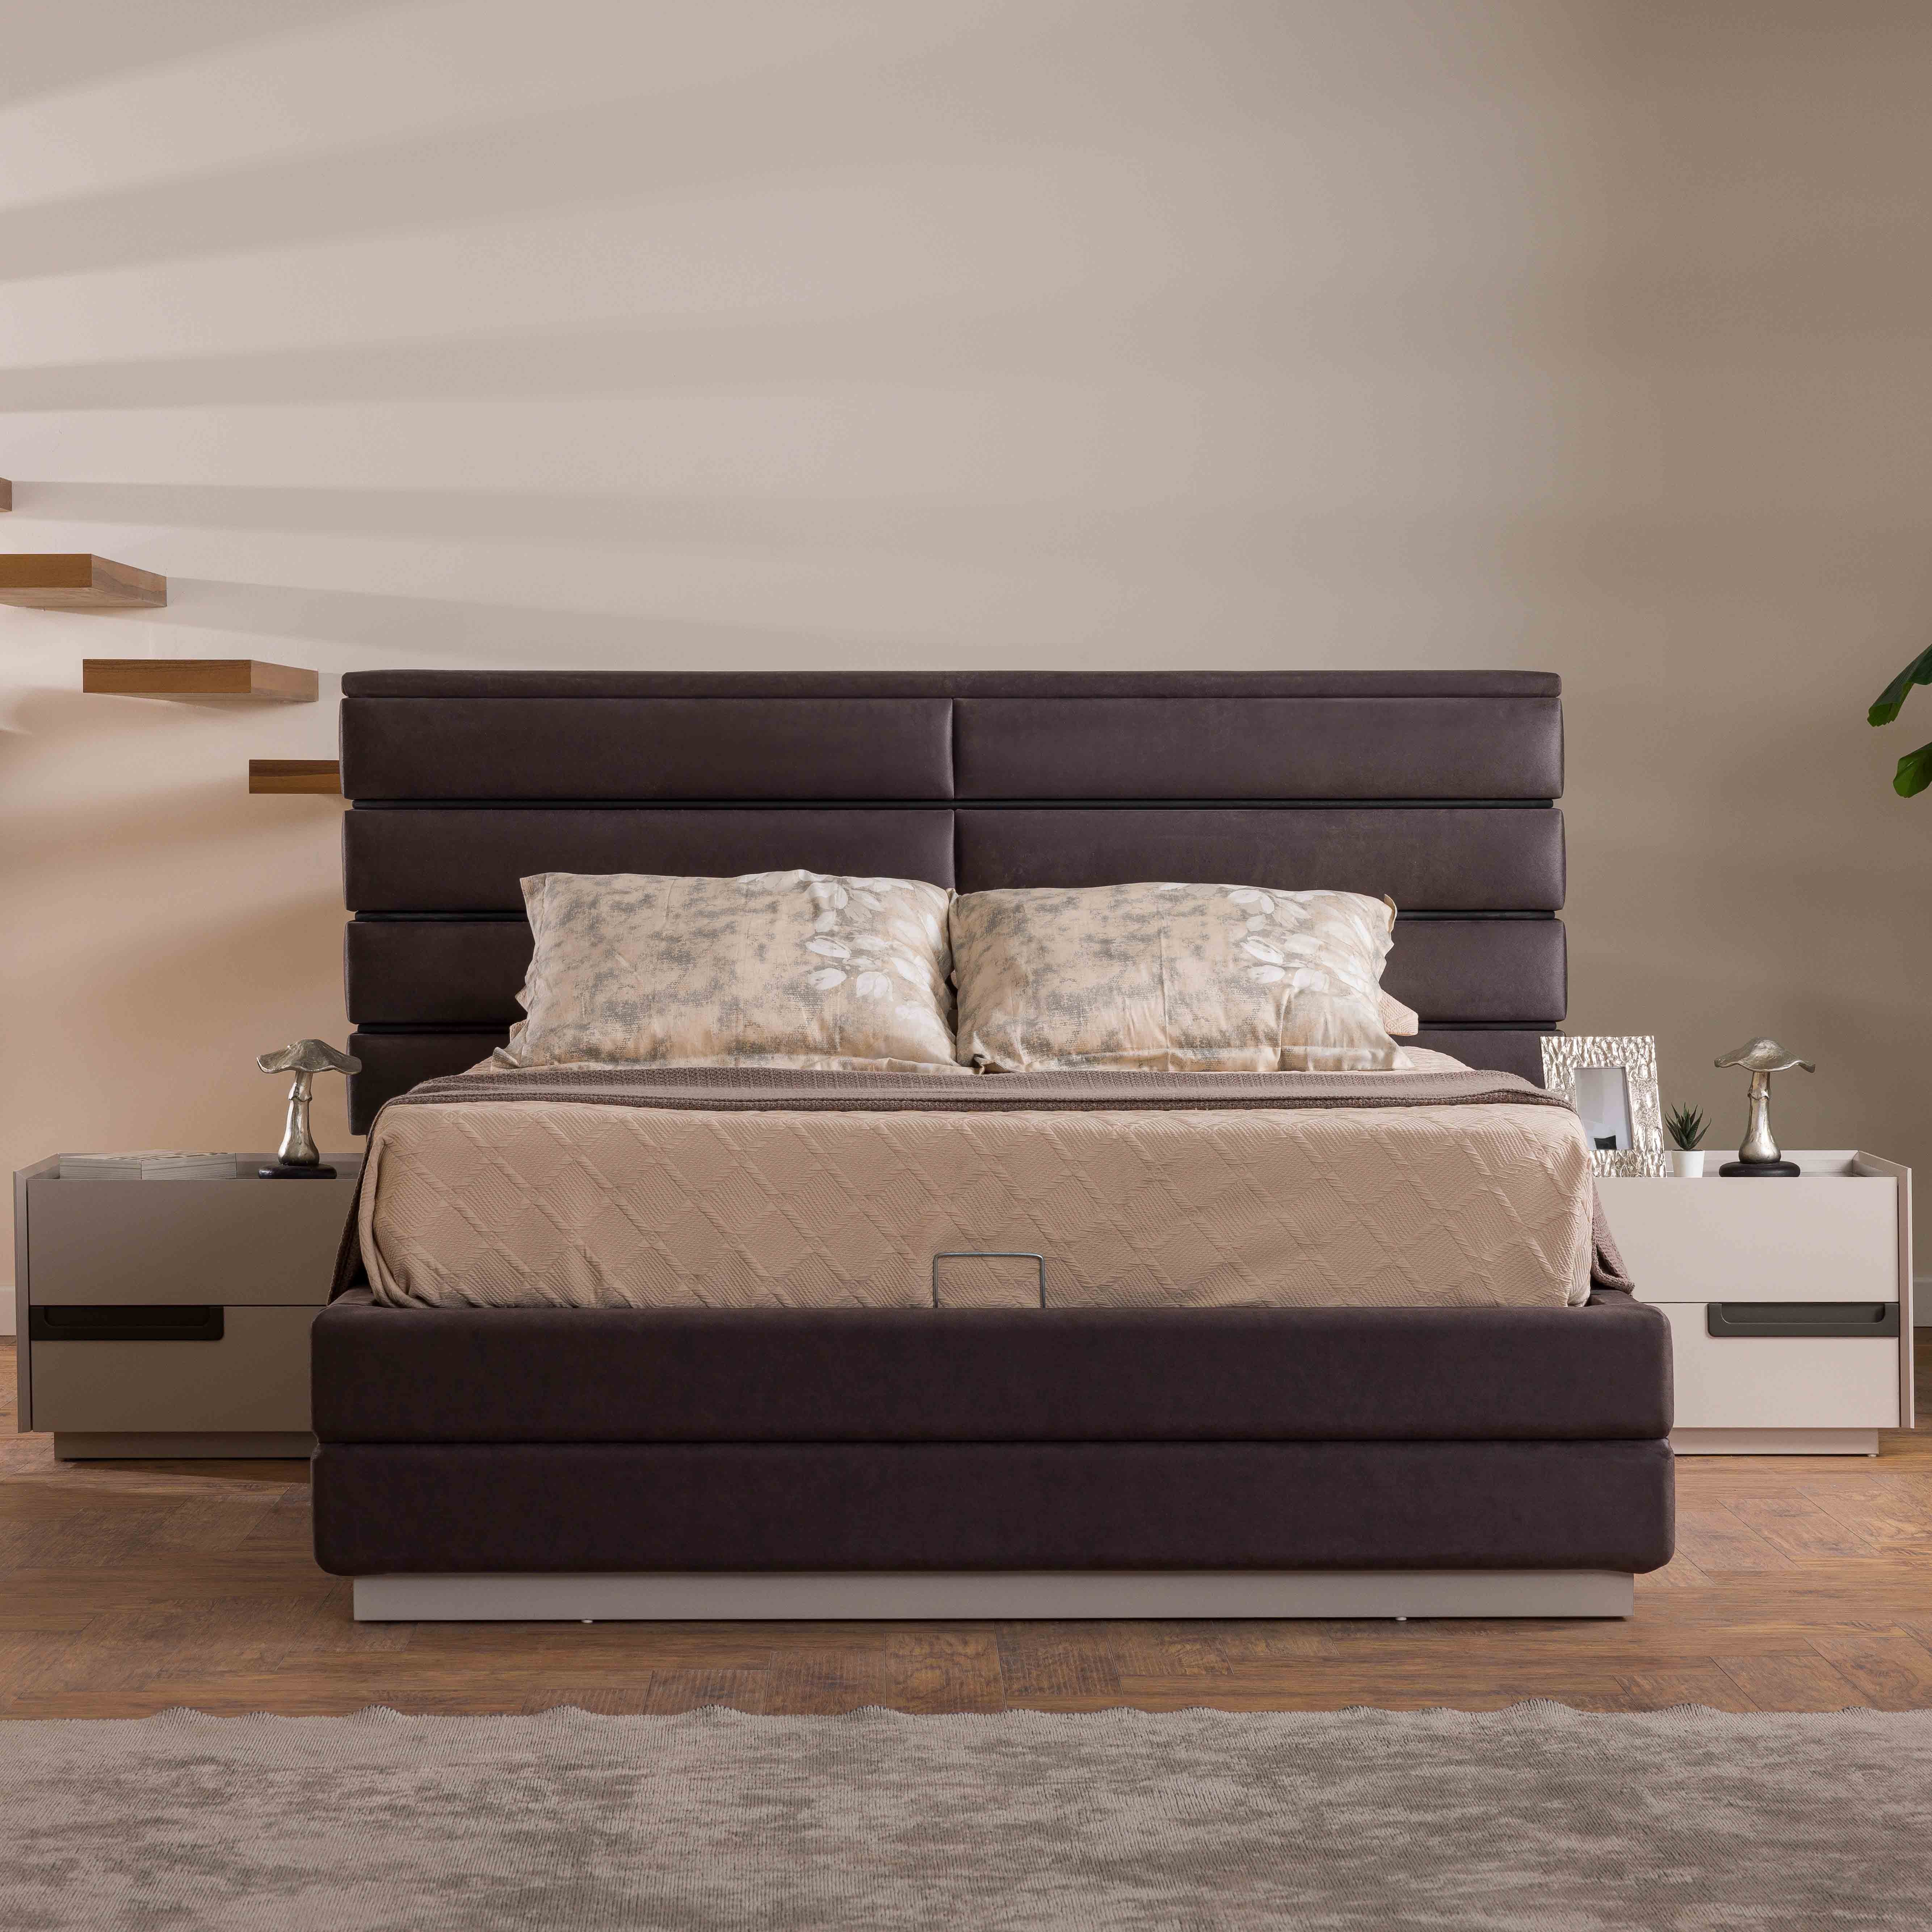 Arya Bed With Storage 160x200 cm